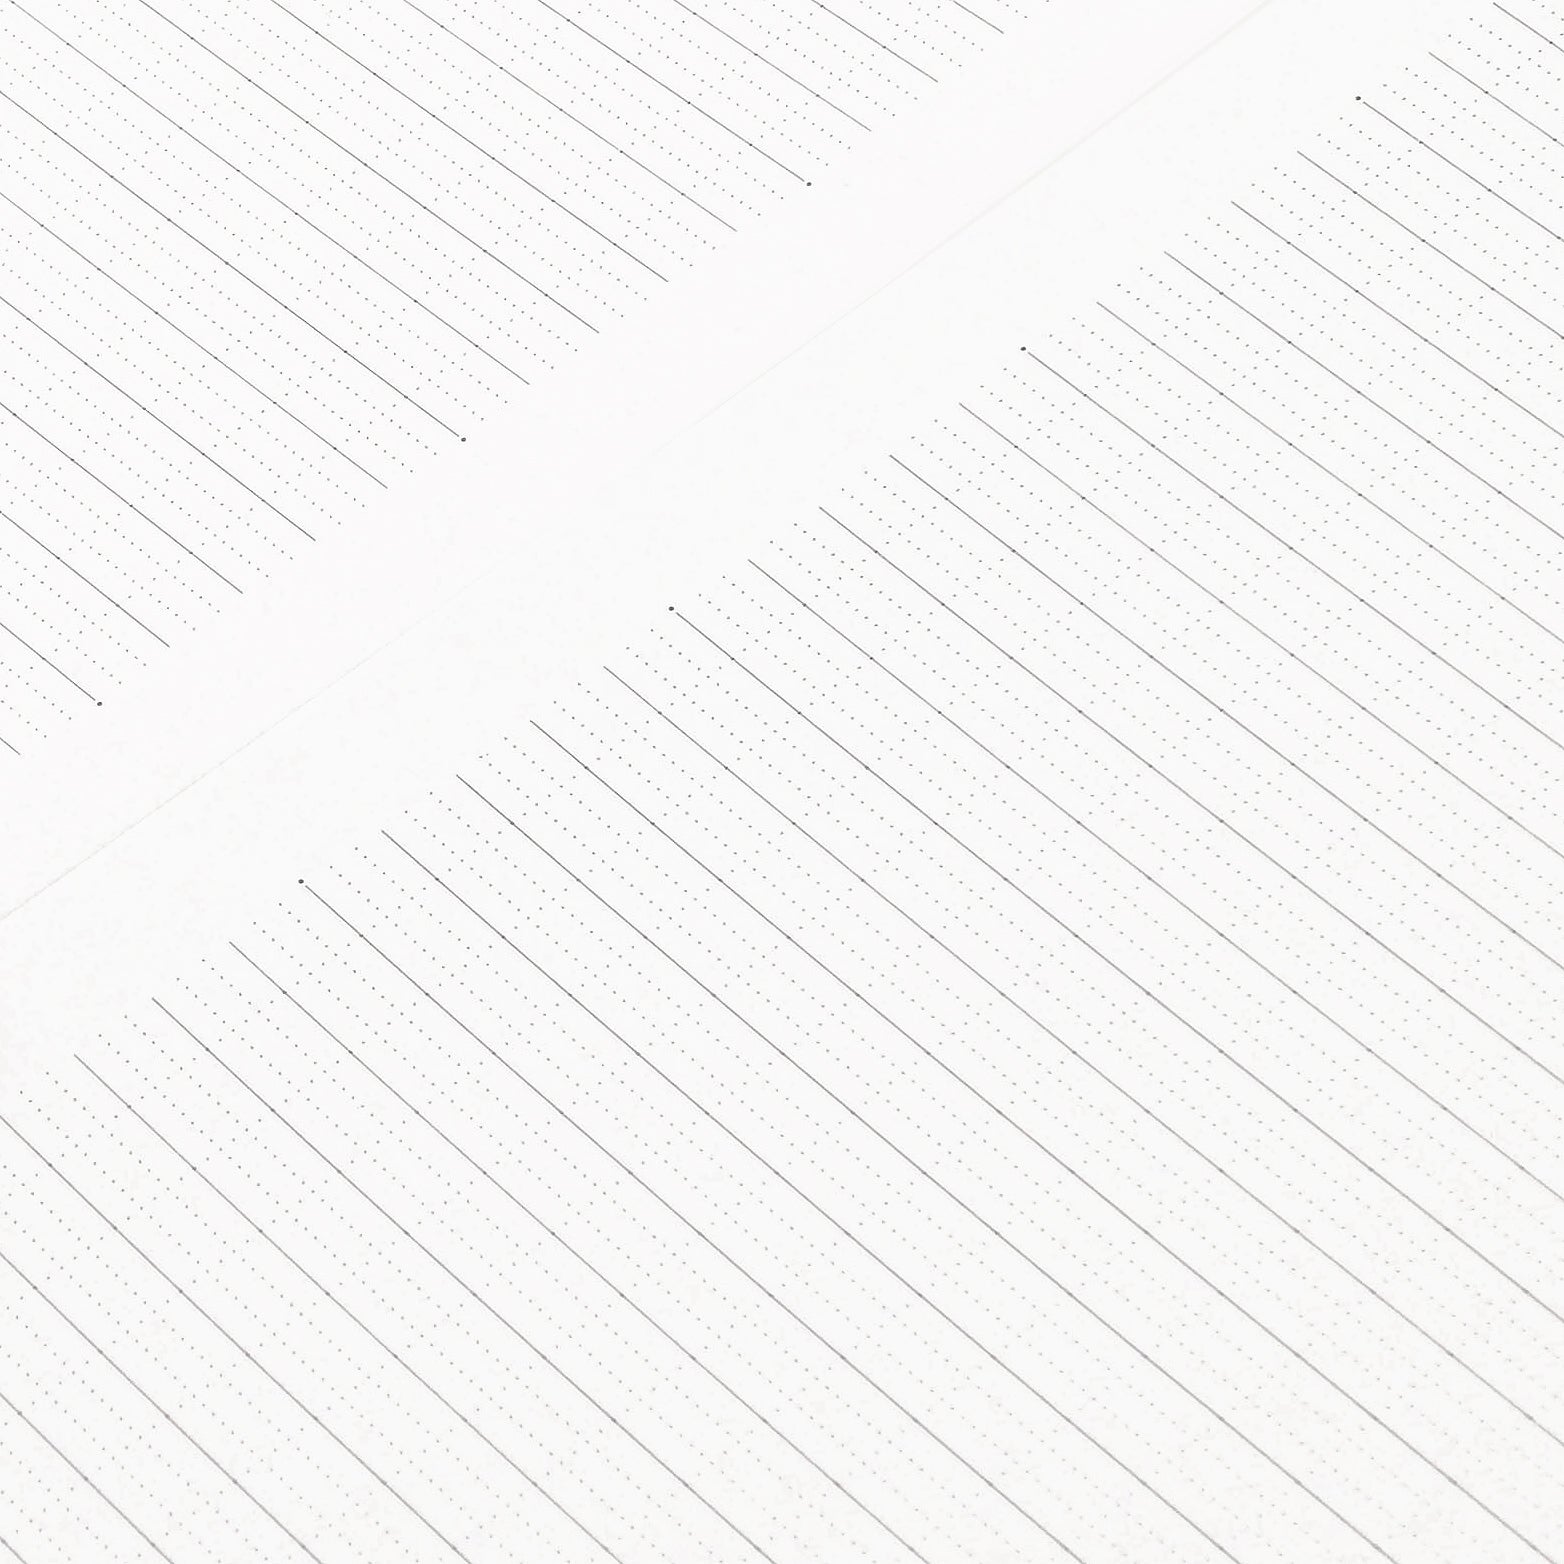 Logical Prime W Ring Notebook Plain (White) — NAKABAYASHI